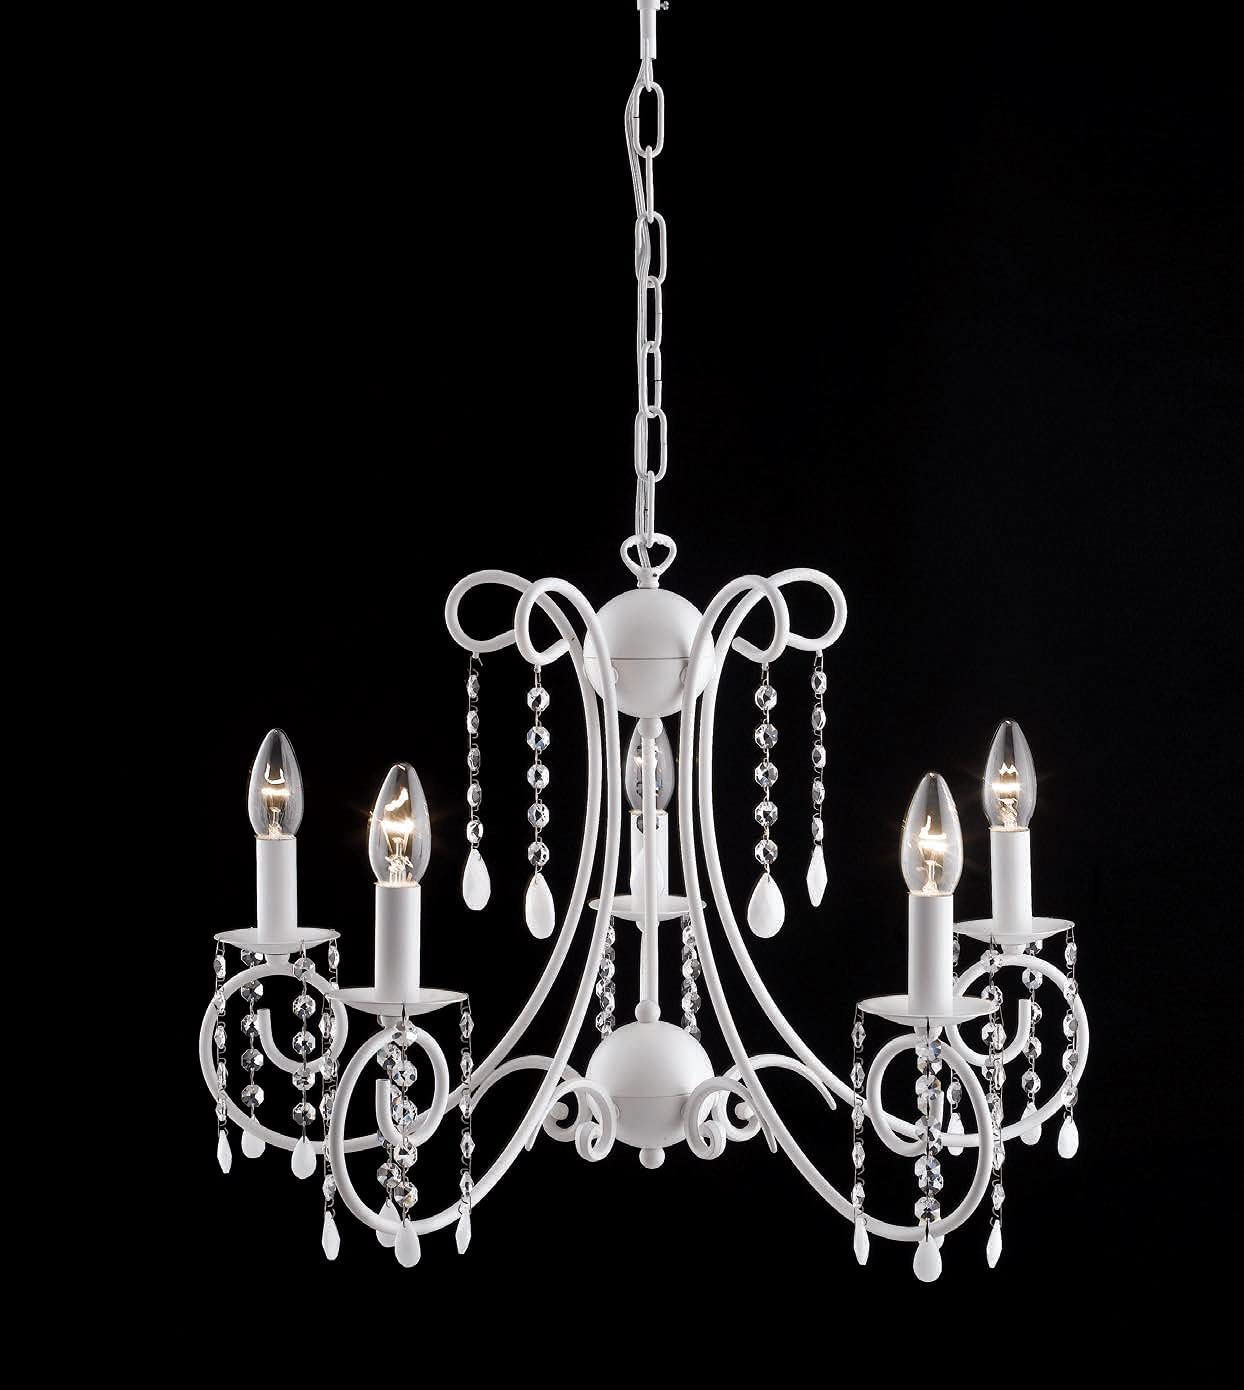 Lampadario moderno a 5 luci in metallo laccato bianco con pendenti in cristallo molato PR 6821/5